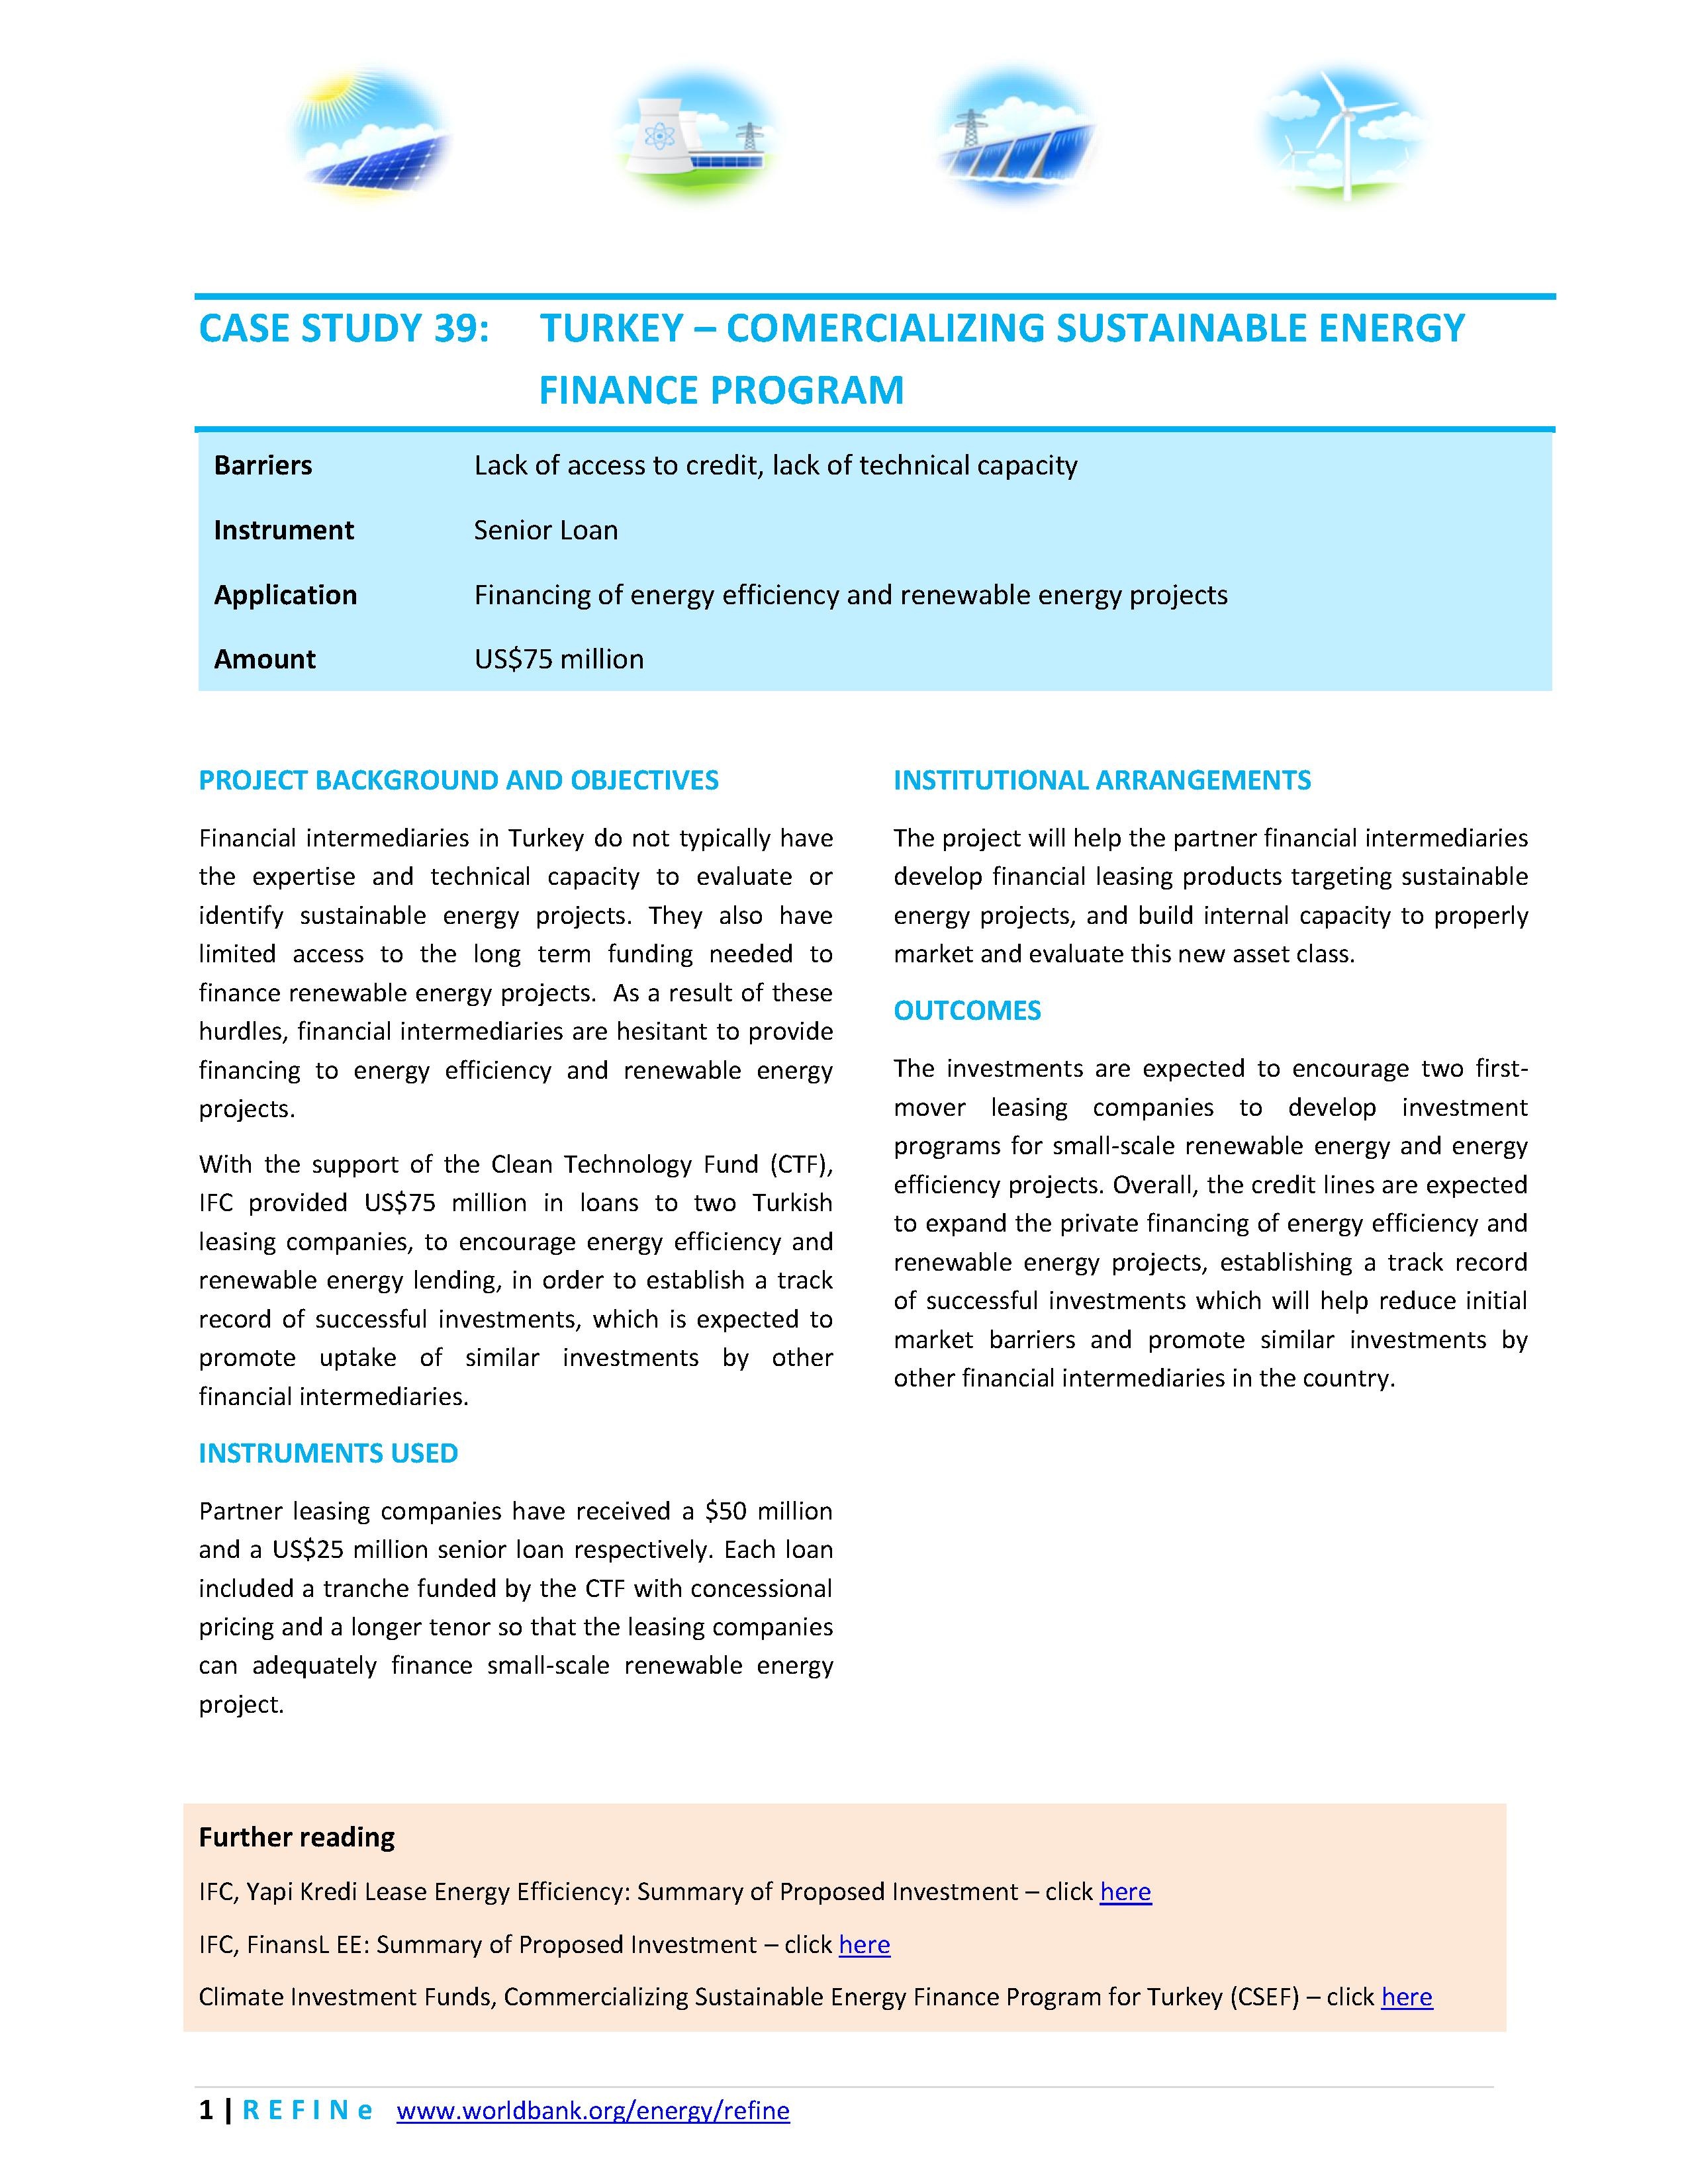 File:Turkey - Commercializing Sustainable Energy Finance Program.pdf